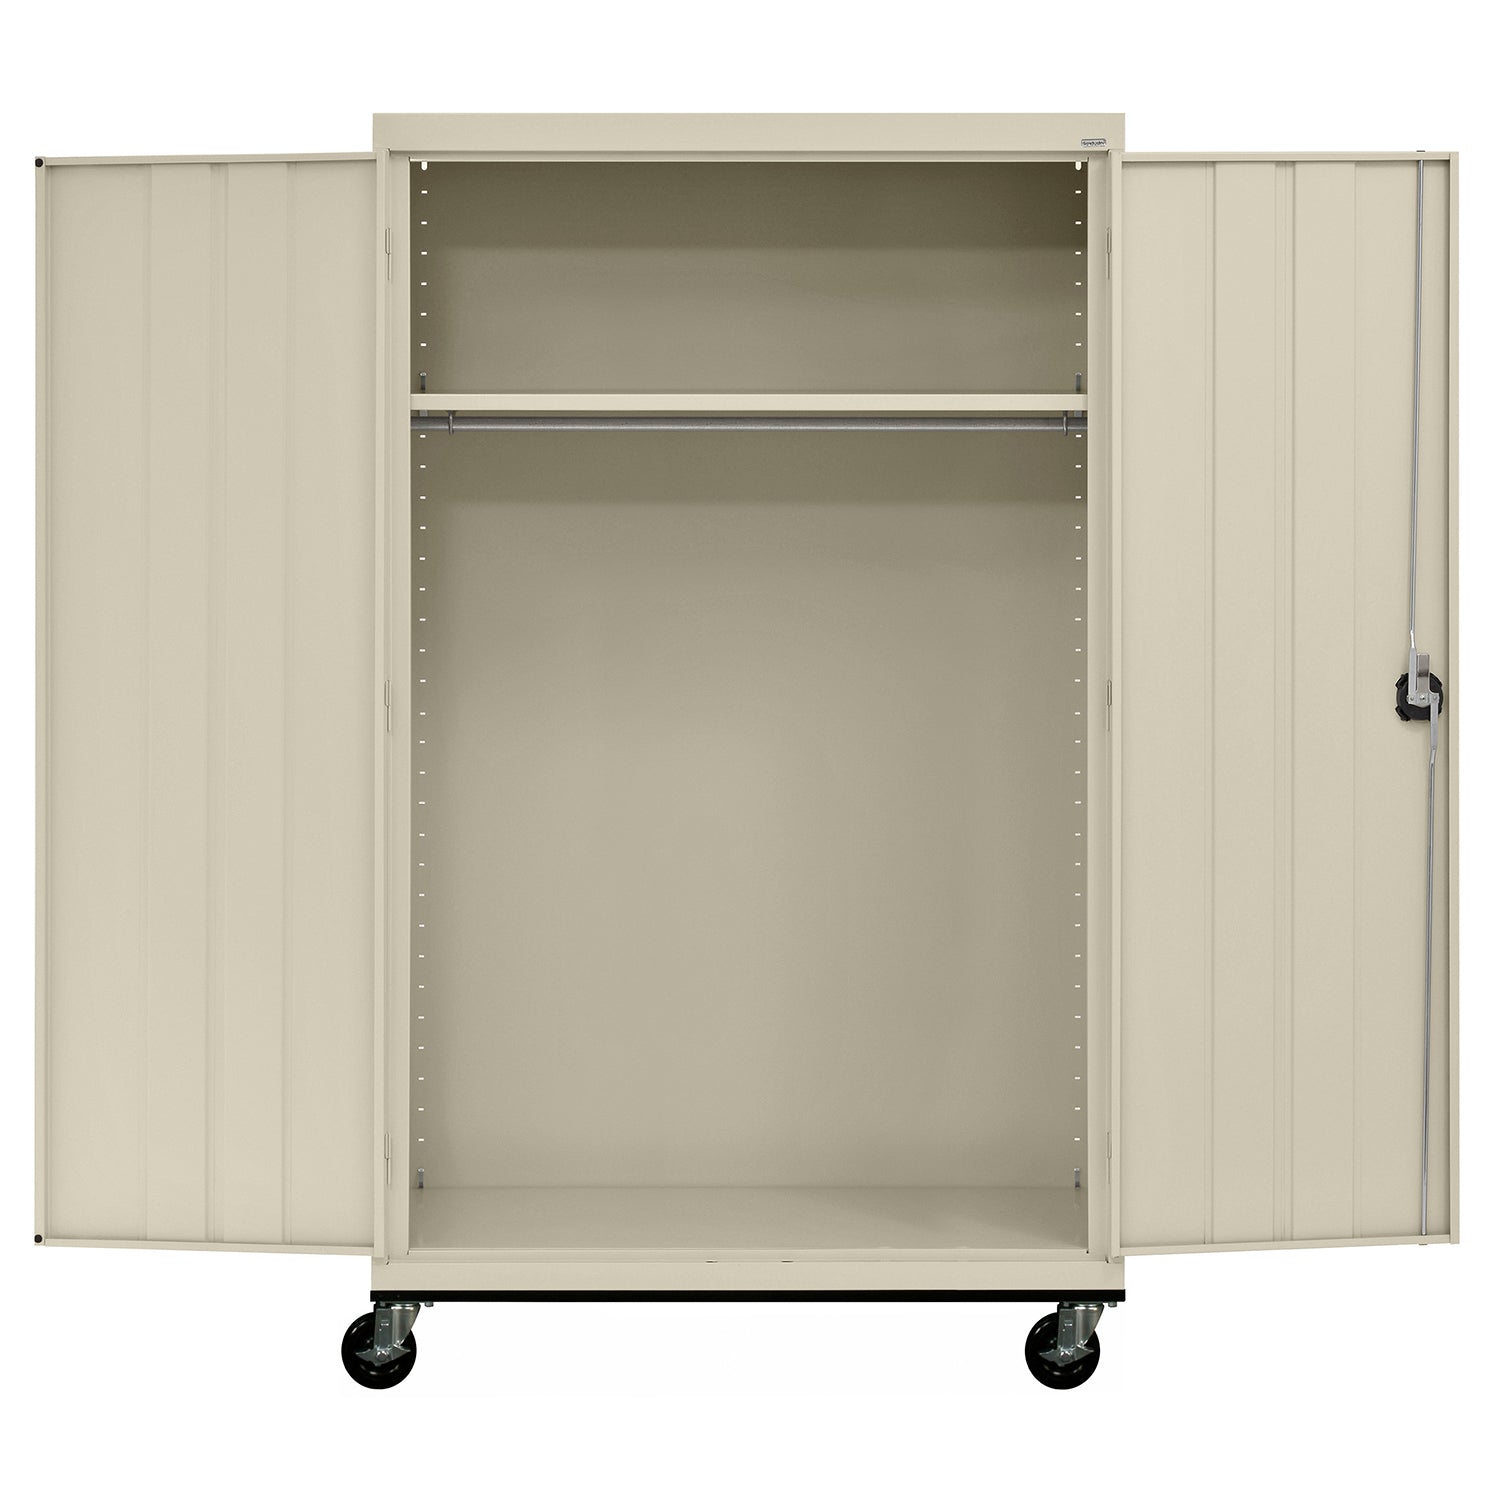 Transport Series Jumbo Wardrobe Storage Cabinet, 46" W x 24" D x 78" H